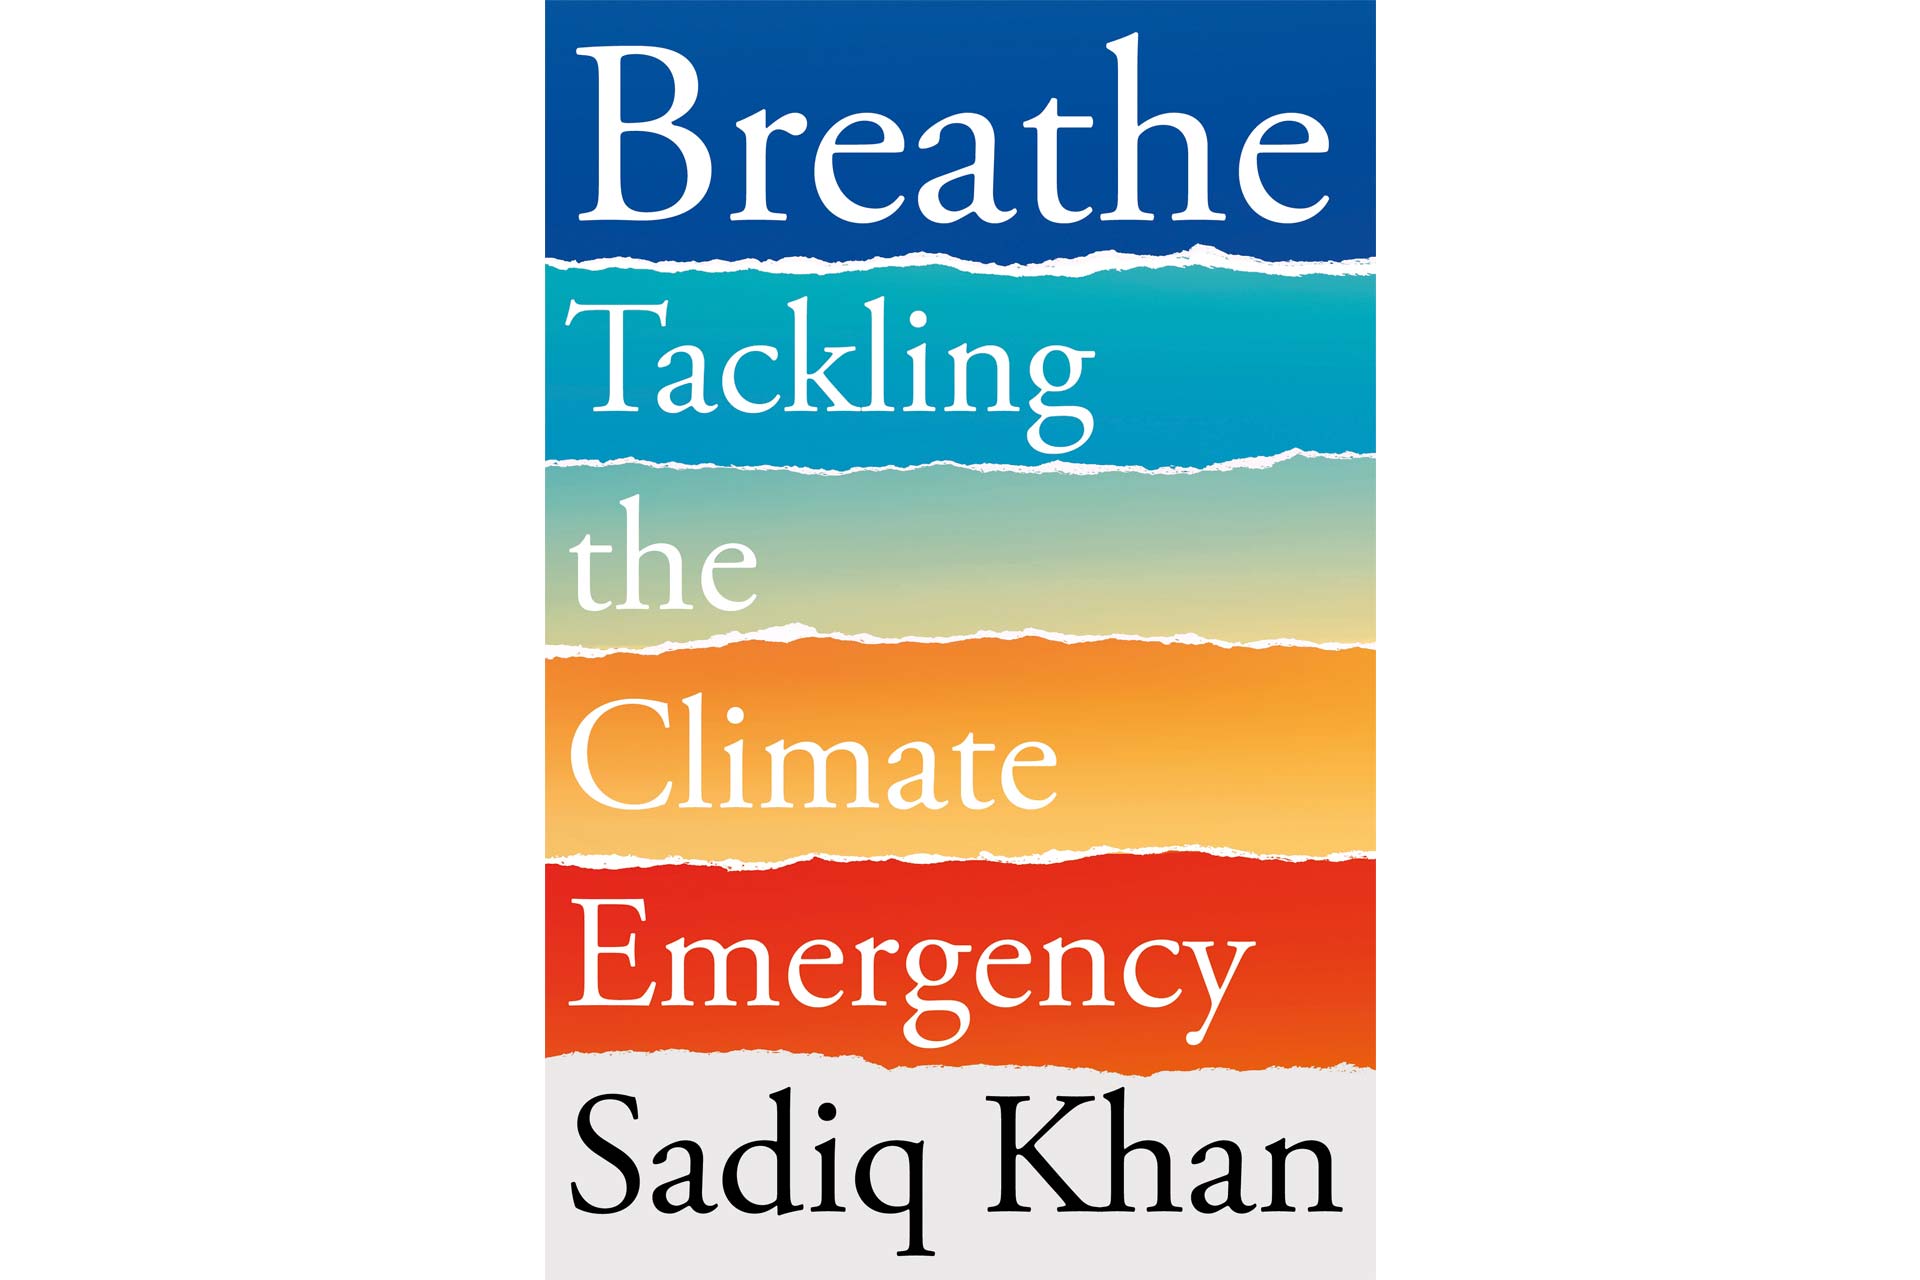 Sadiq Khan's 'Breathe' book, cover